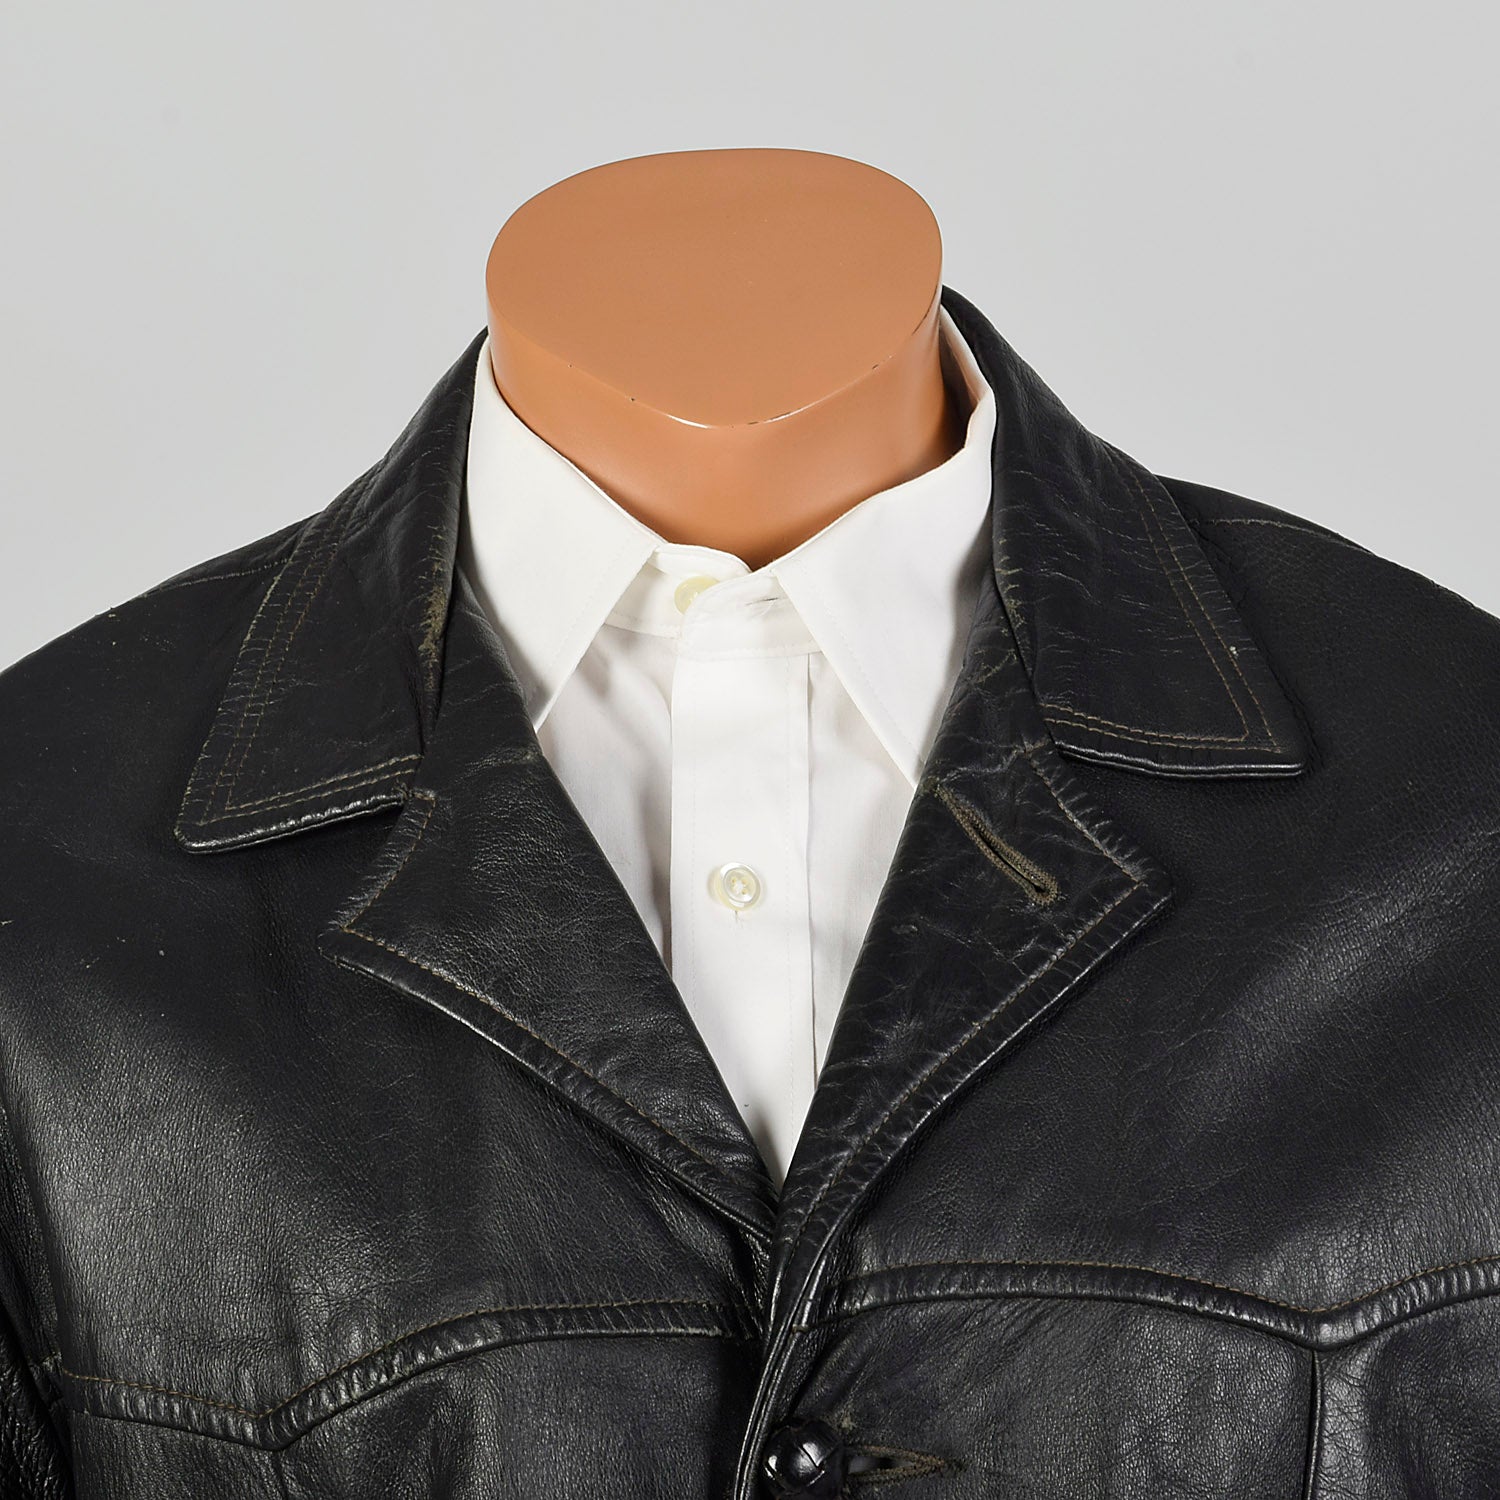 Large 1950s Black Leather Jacket